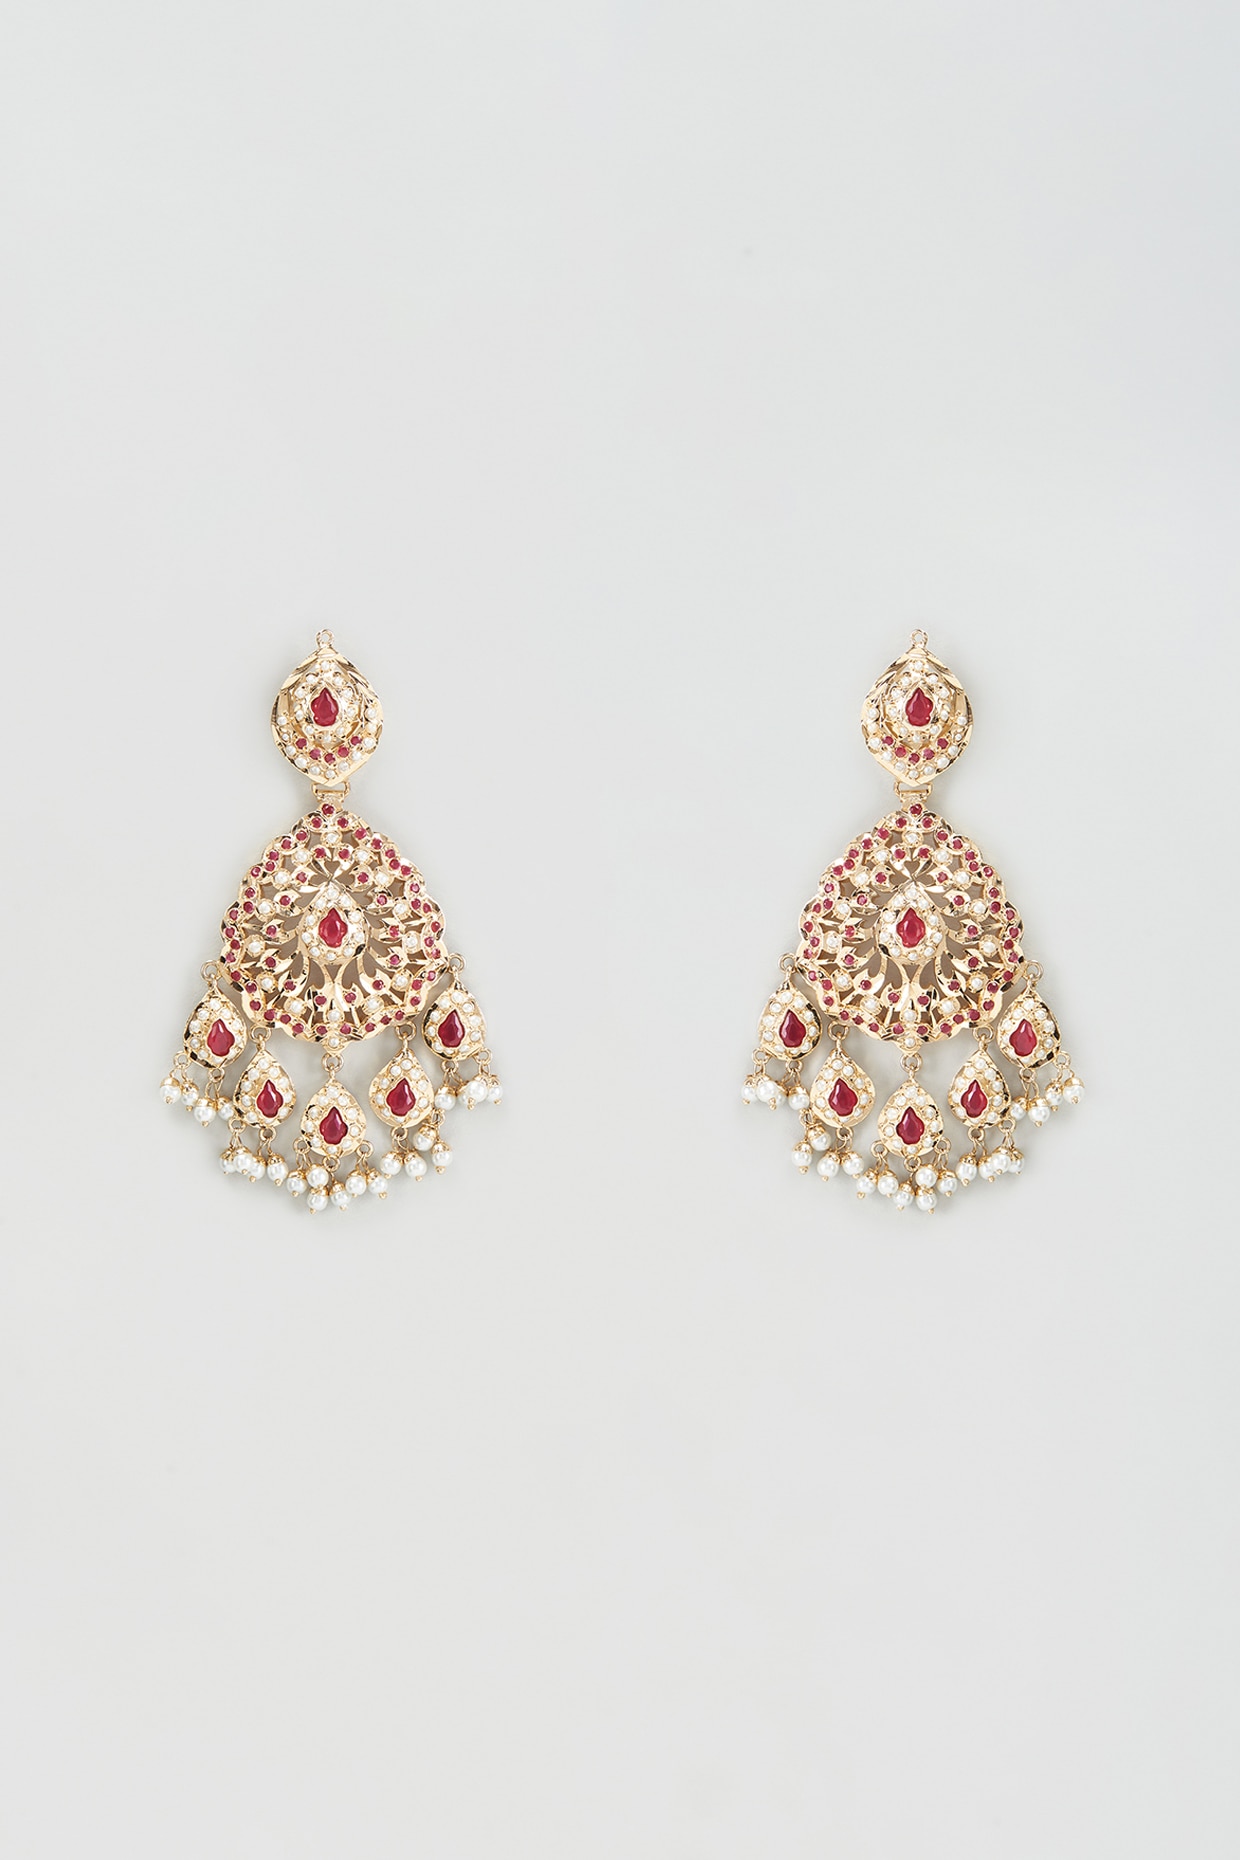 Buy Red Earrings for Women by Karatcart Online | Ajio.com